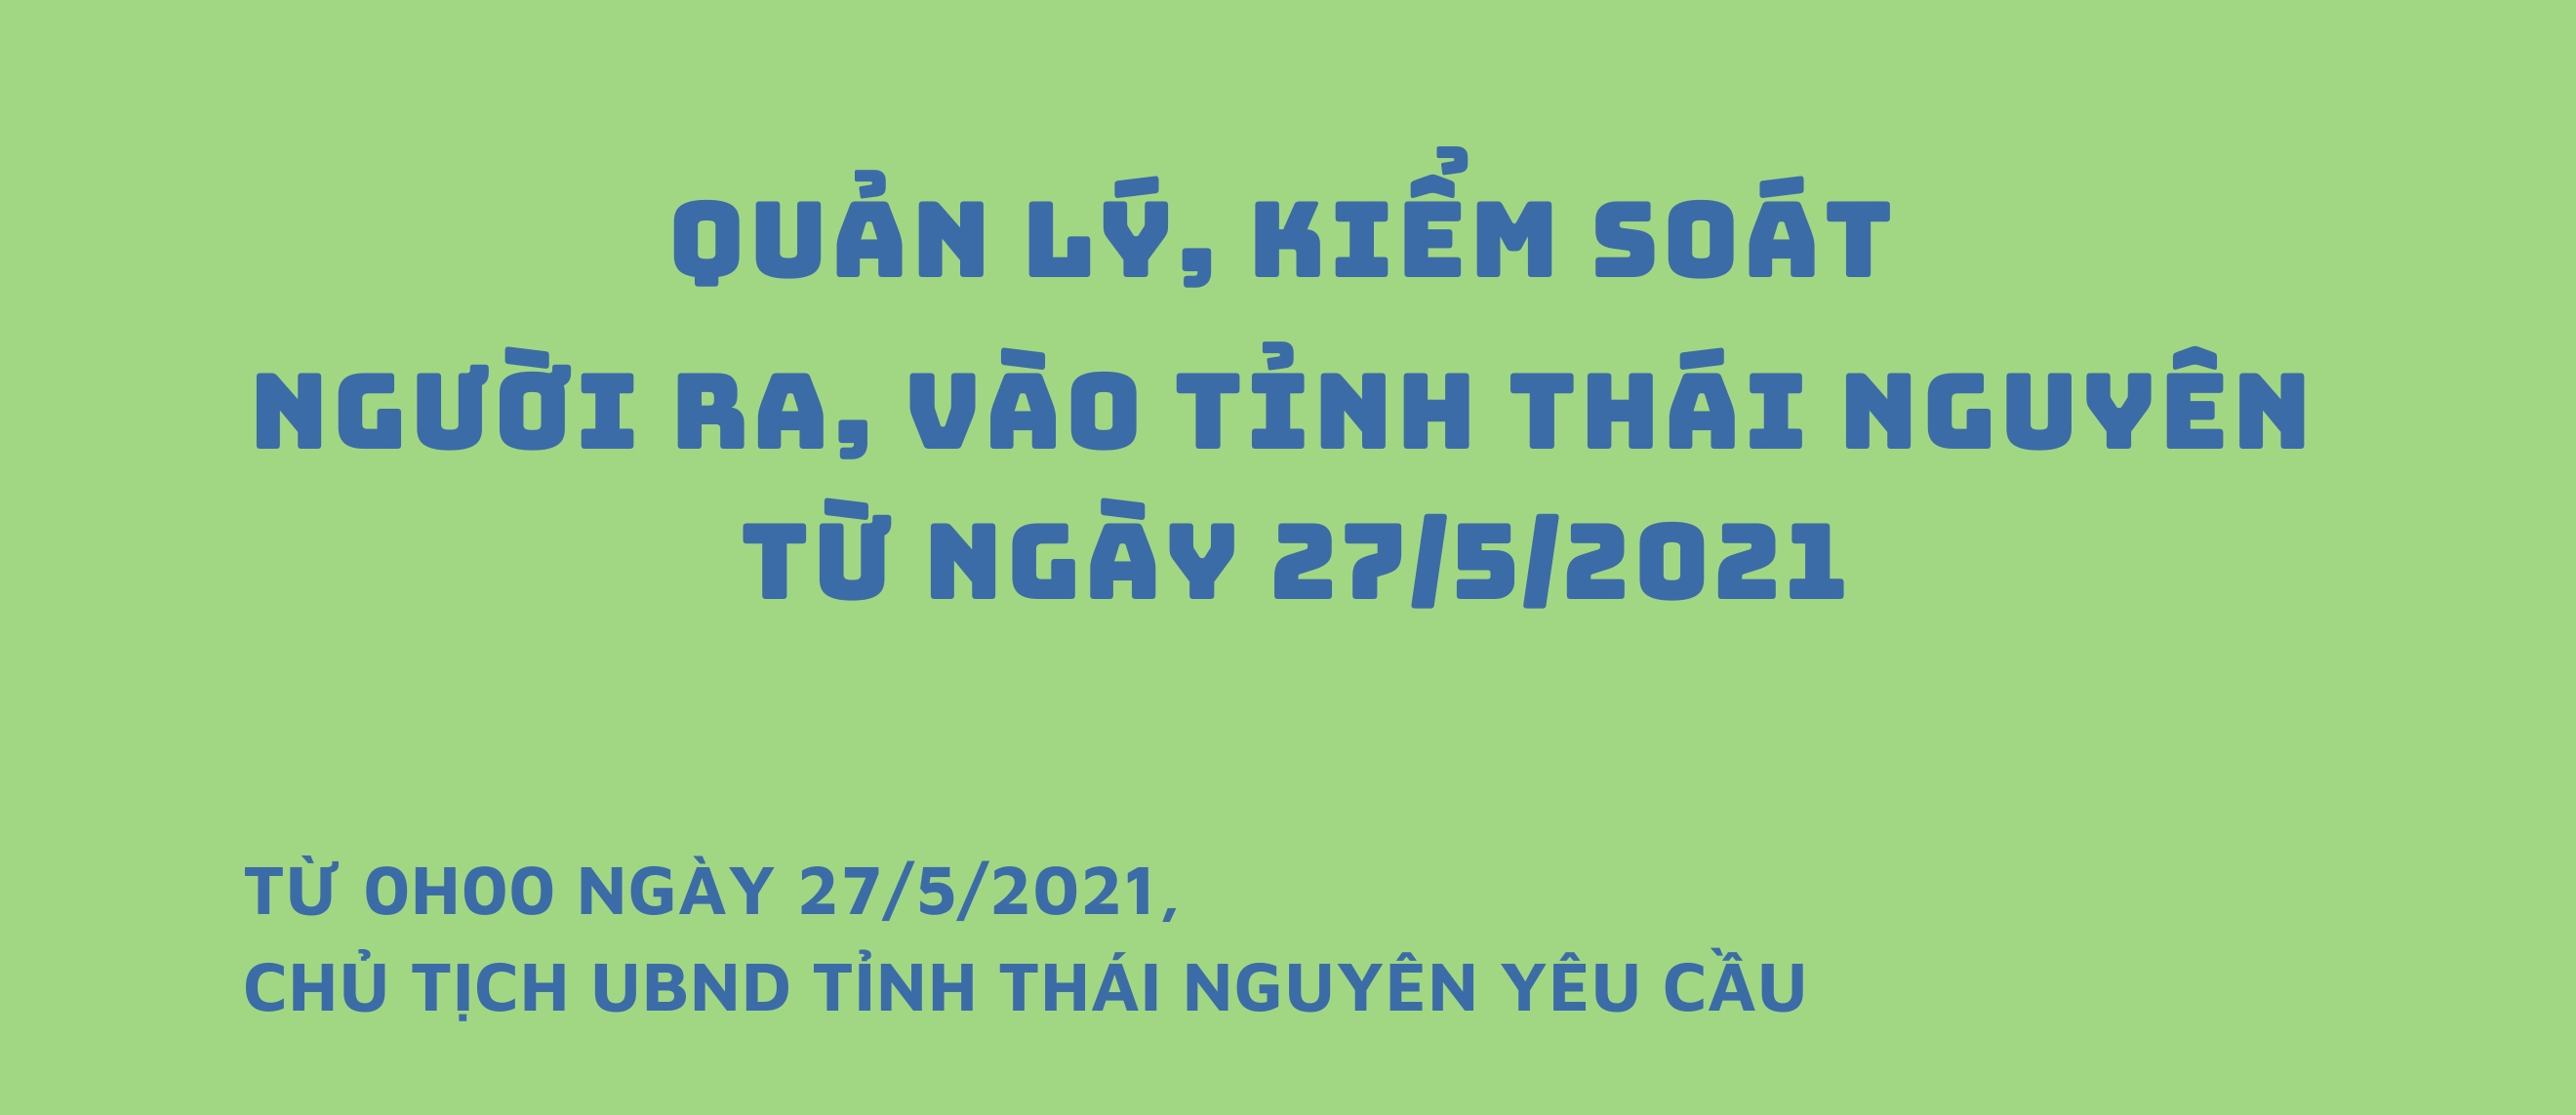 [Infographics] Thái Nguyên: Quản lý, kiểm soát người ra, vào tỉnh từ ngày 27/5/2021